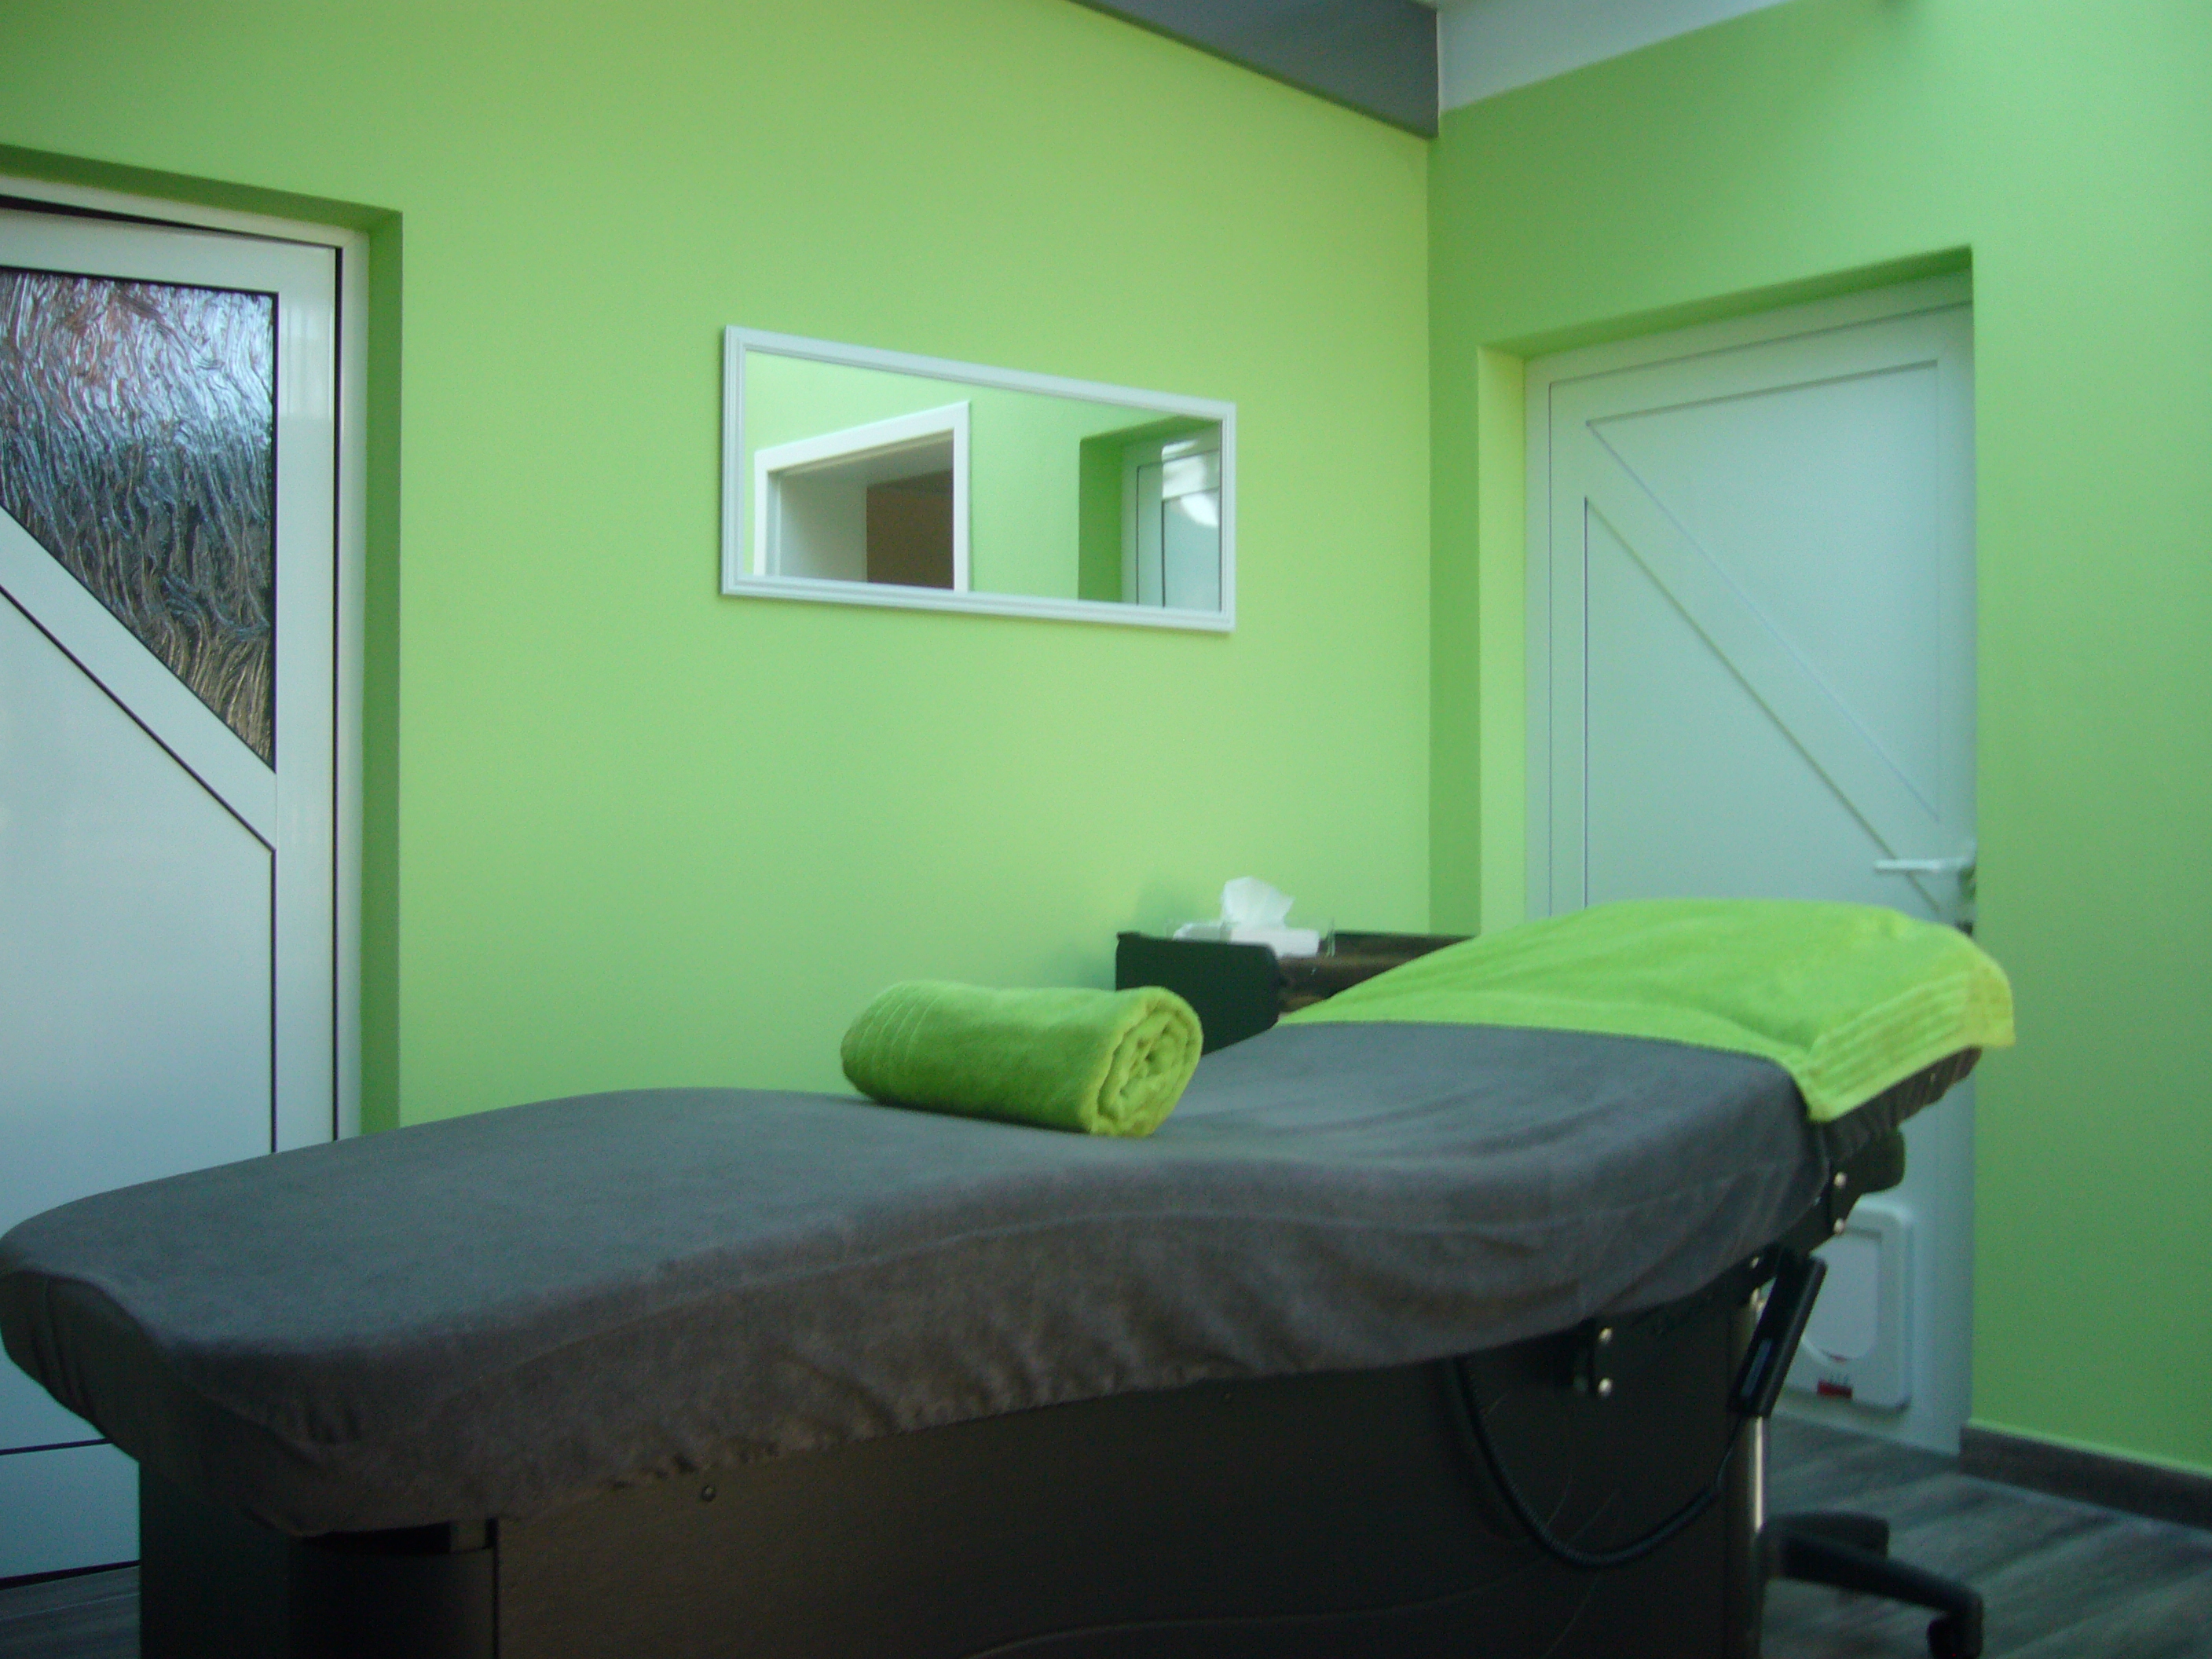 Das Kosmetikstudio Charisma in Straubing bietet Massagen, Gesichtsbehandlungen, Fußpflege und mehr...